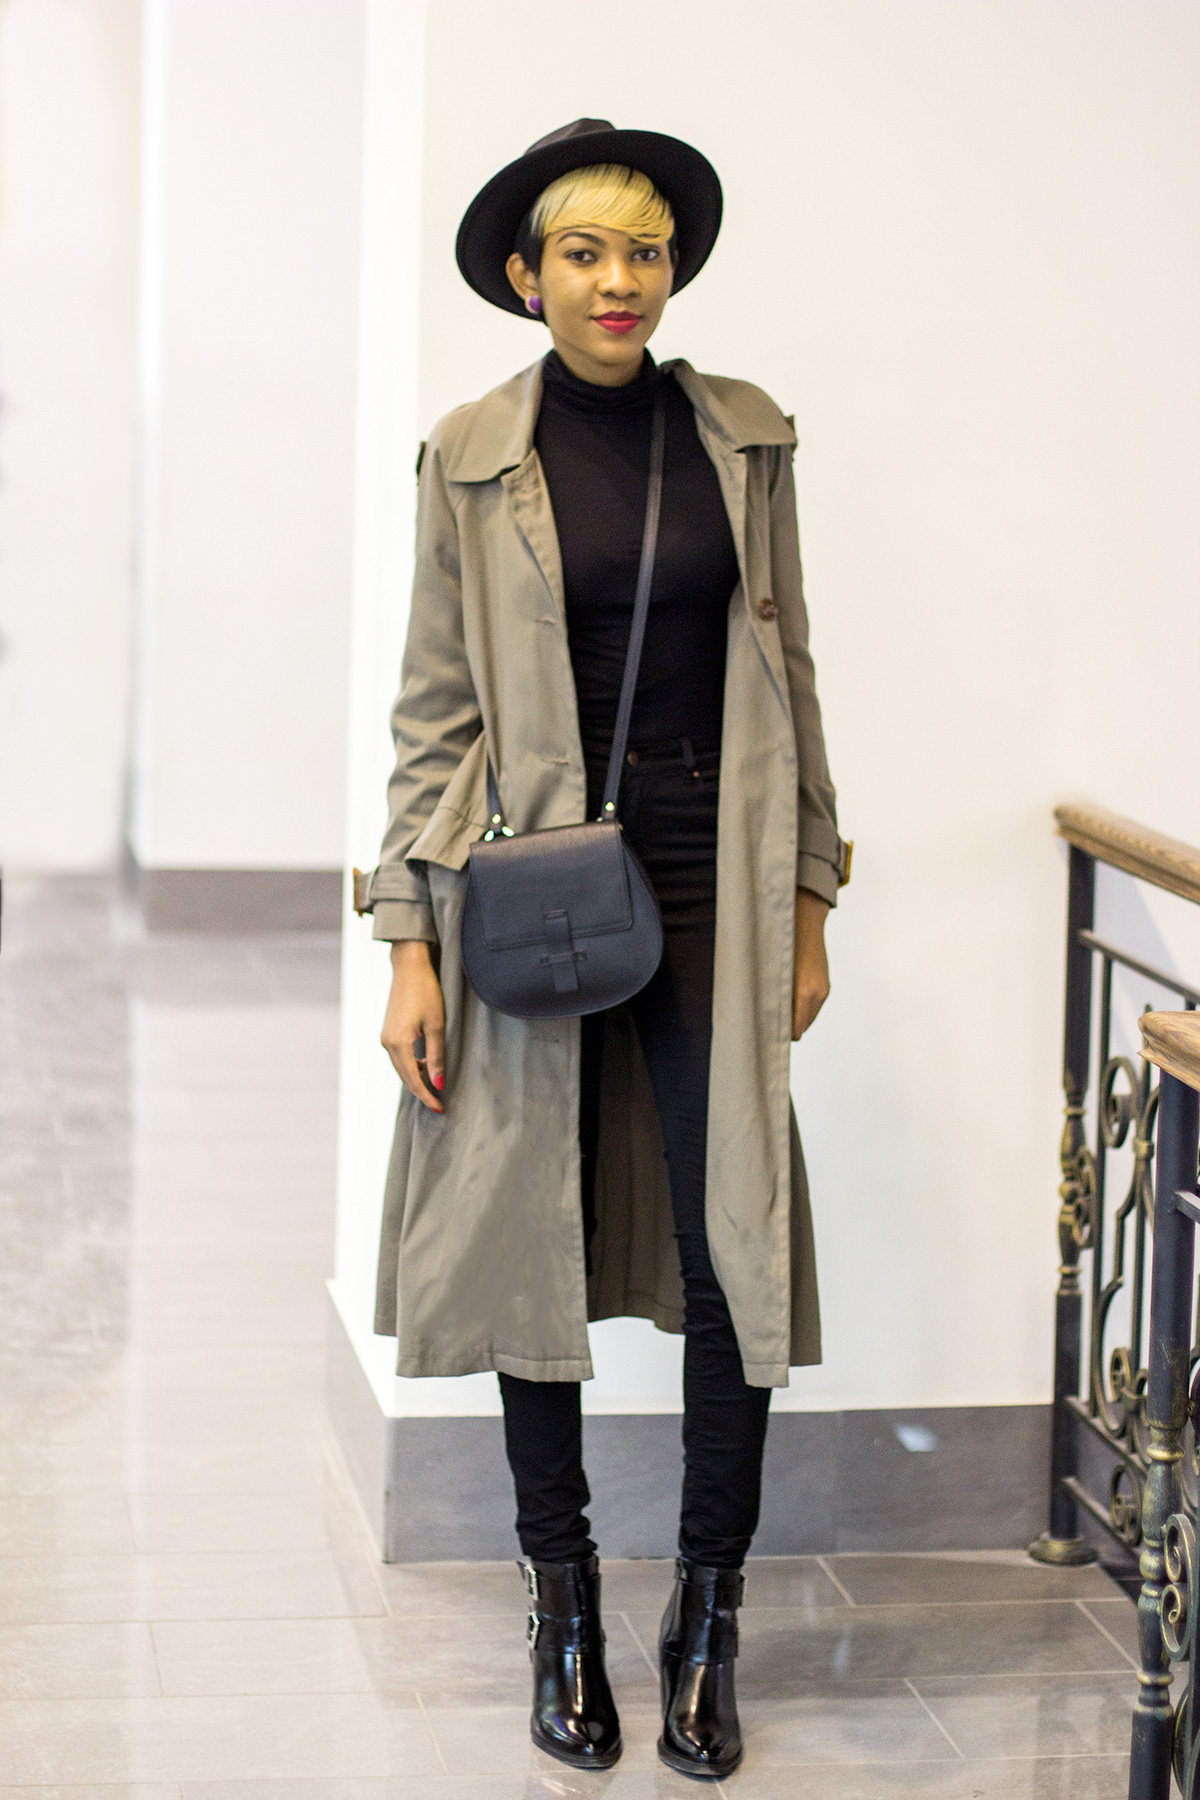 Fashion blogger khaki style outfit